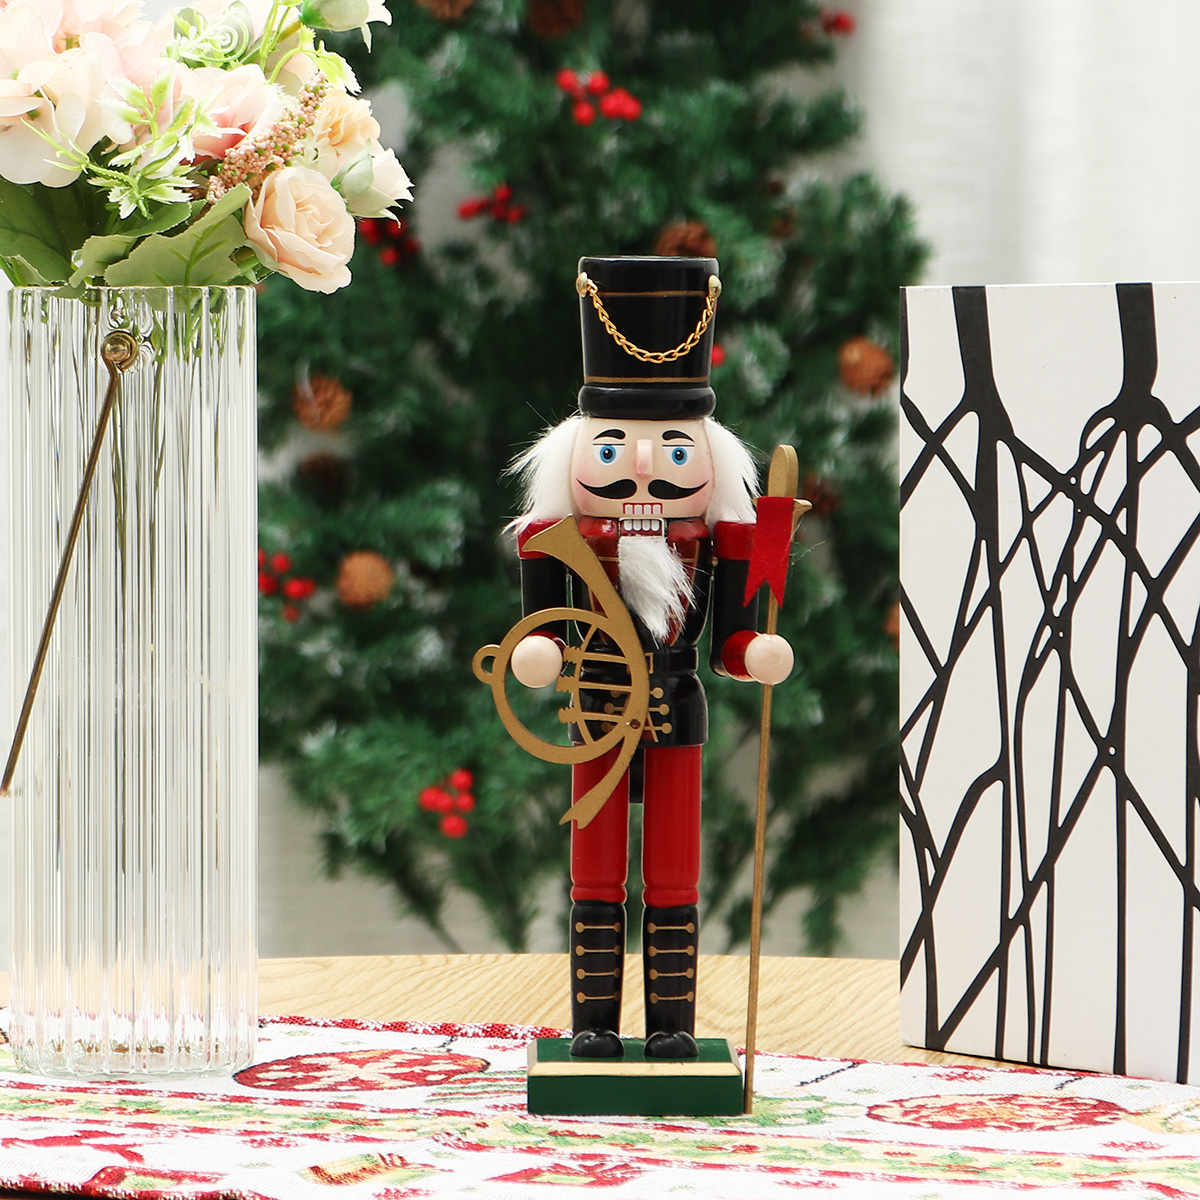 Christmas-Nutcracker-Soldier-Doll--Wooden-Puppet-Vintage-Desktop-Ornaments-25cm-Festival-Decoration-1767883-6